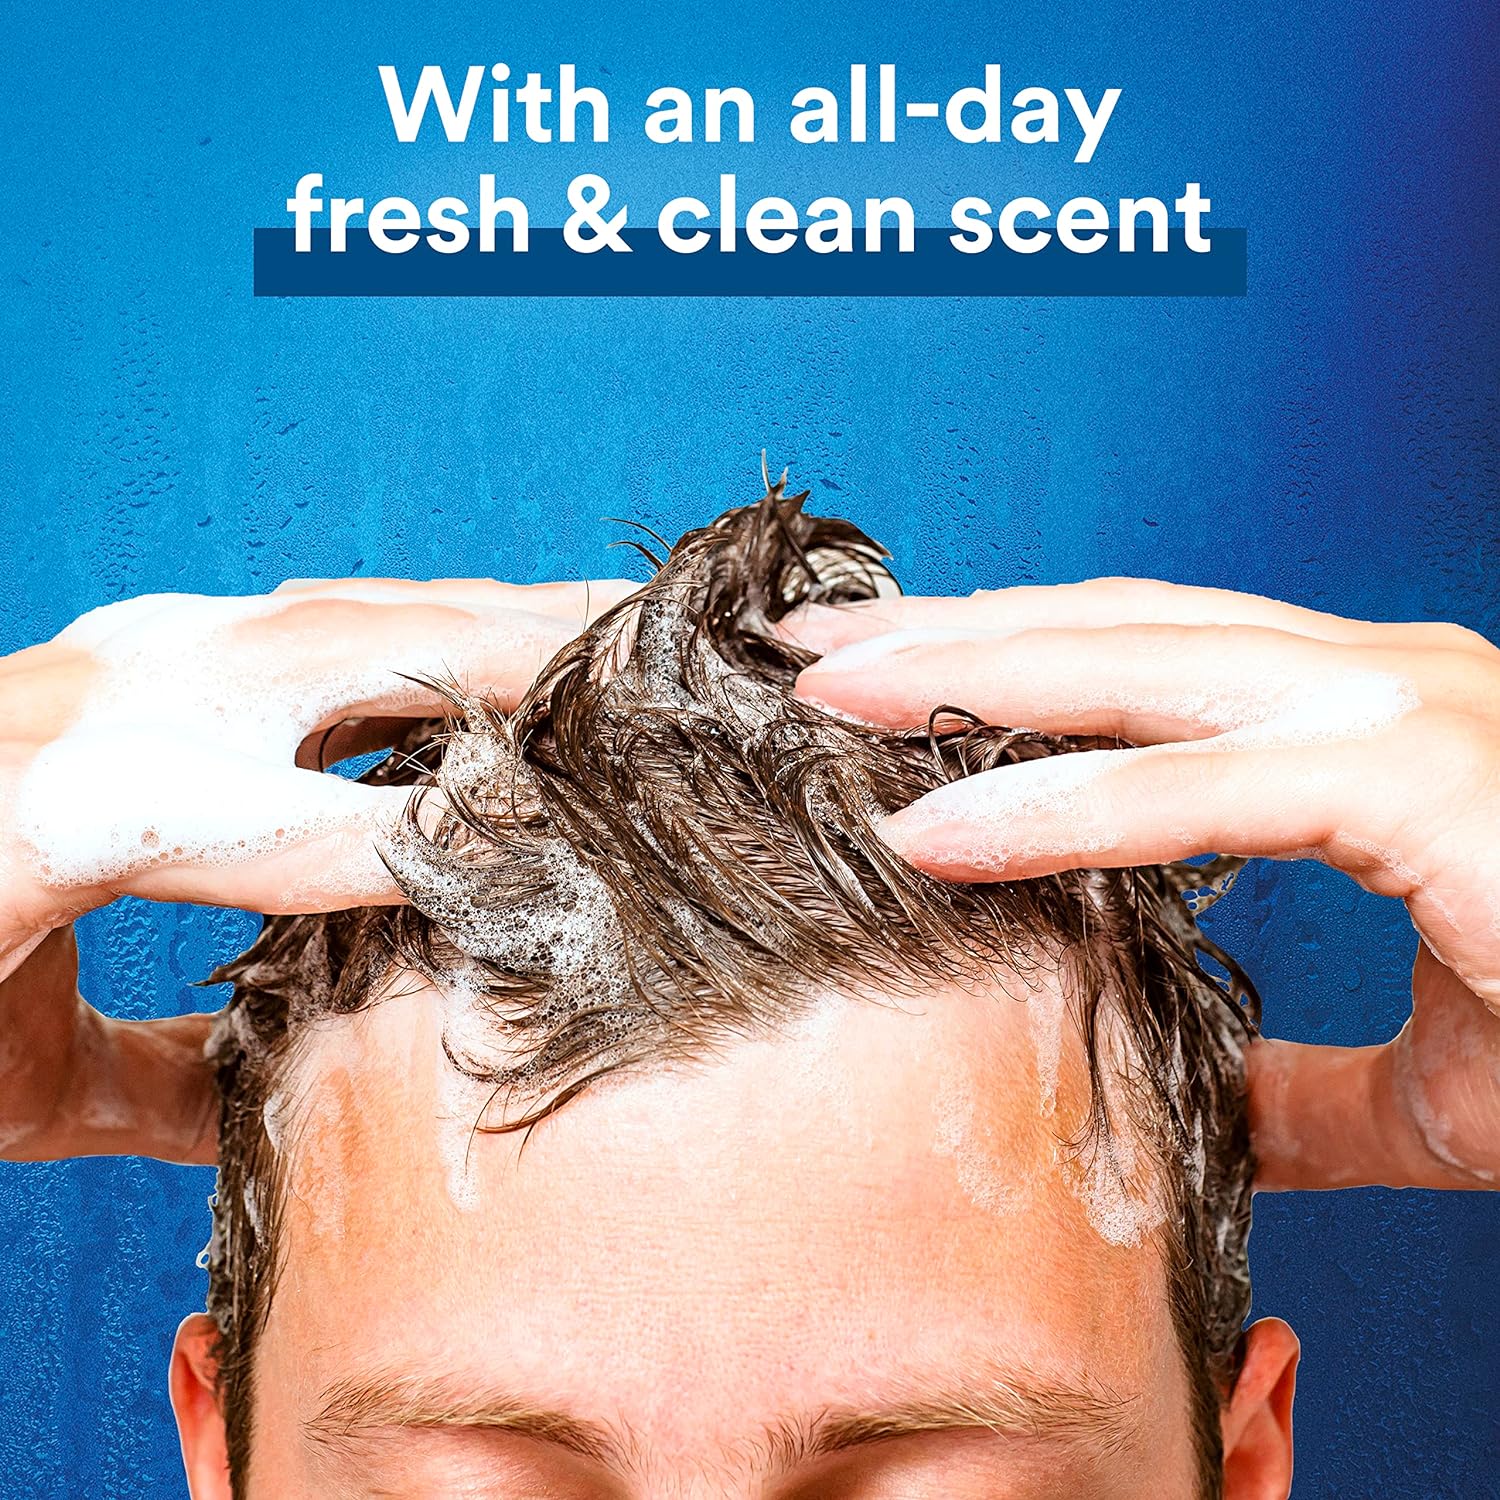 Suave Men 3 in 1 Shampoo Conditioner Bodywash Men's Body Wash, Shampoo, Conditioner Charcoal Warm, Stimulating Scent 40 oz : Beauty & Personal Care